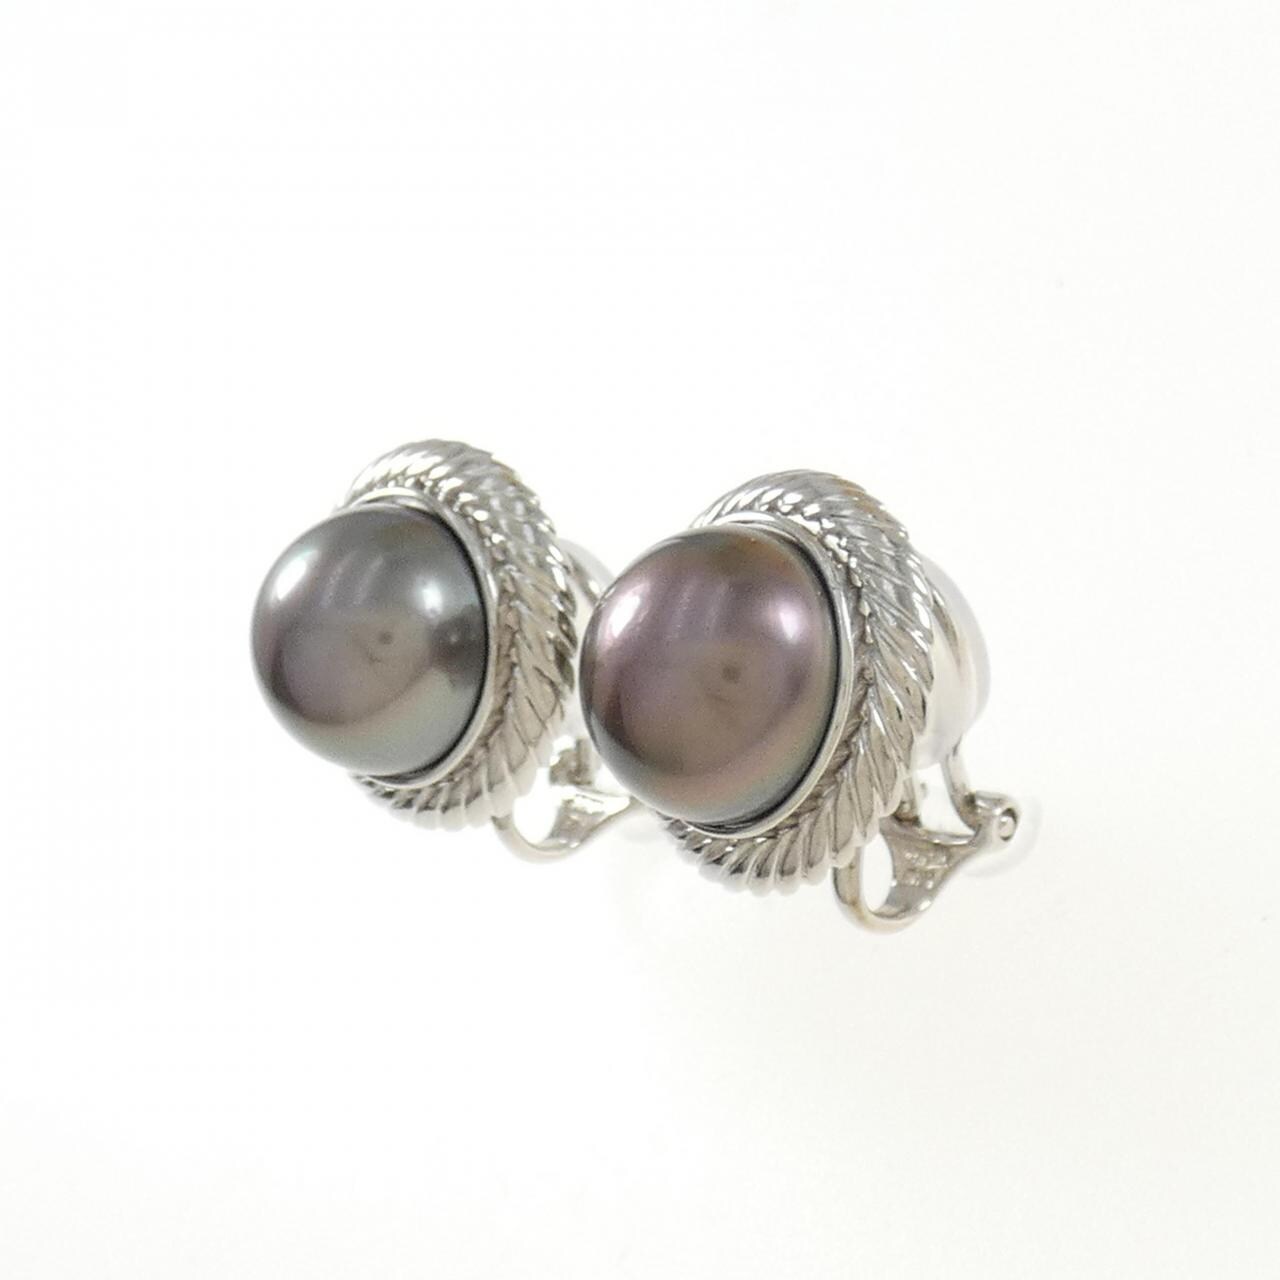 PT black butterfly pearl earrings 11.1mm